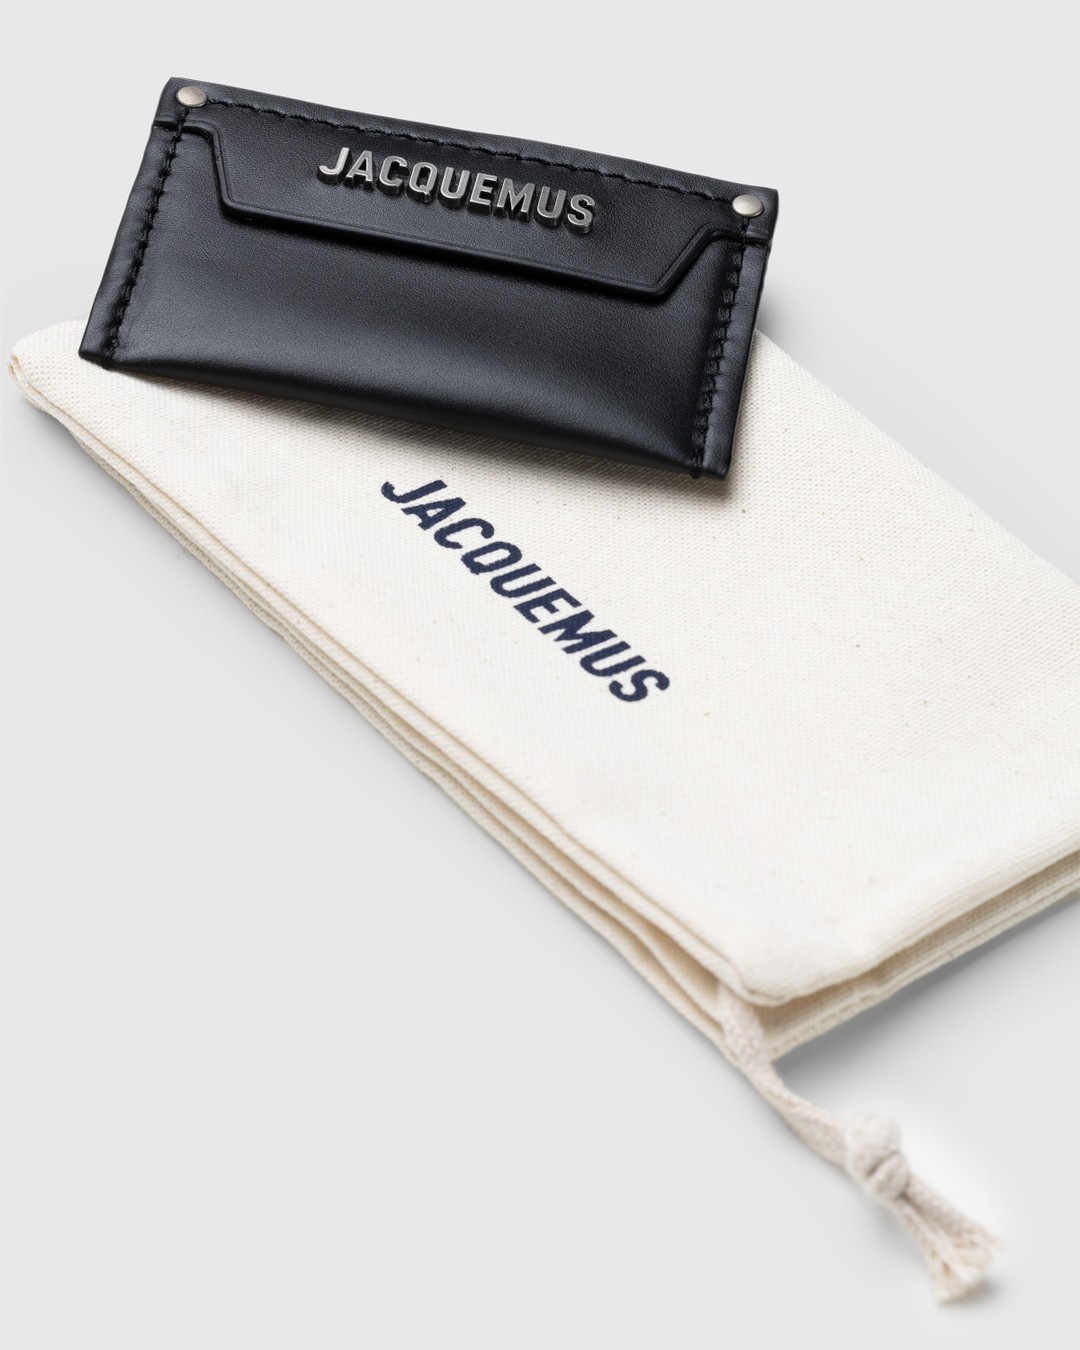 JACQUEMUS – Le Porte Carte Meunier Black | Highsnobiety Shop